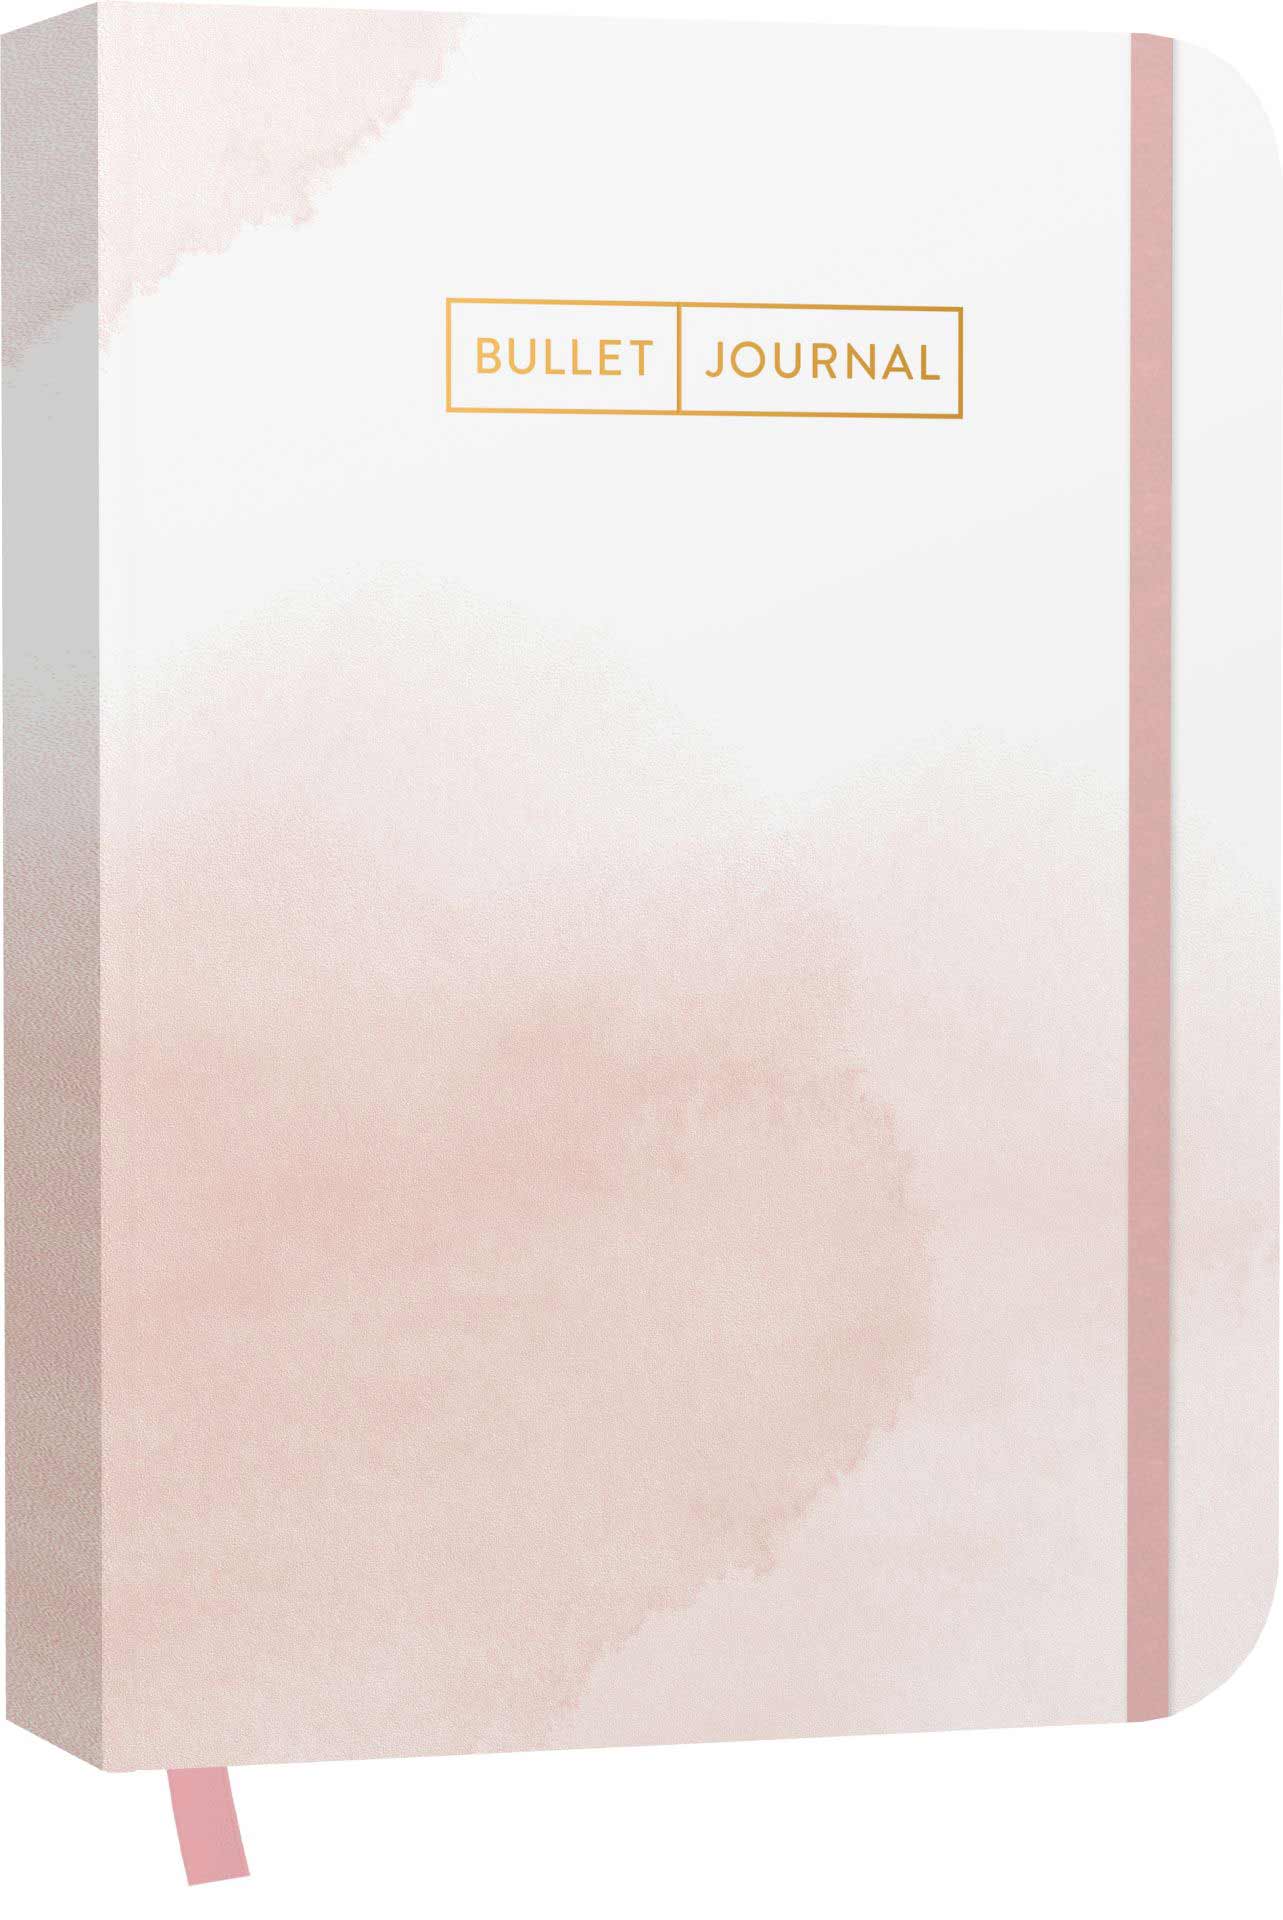 Das ist ein Notizbuch watercolor rose mit Lesebändchen und Verschlussgummi